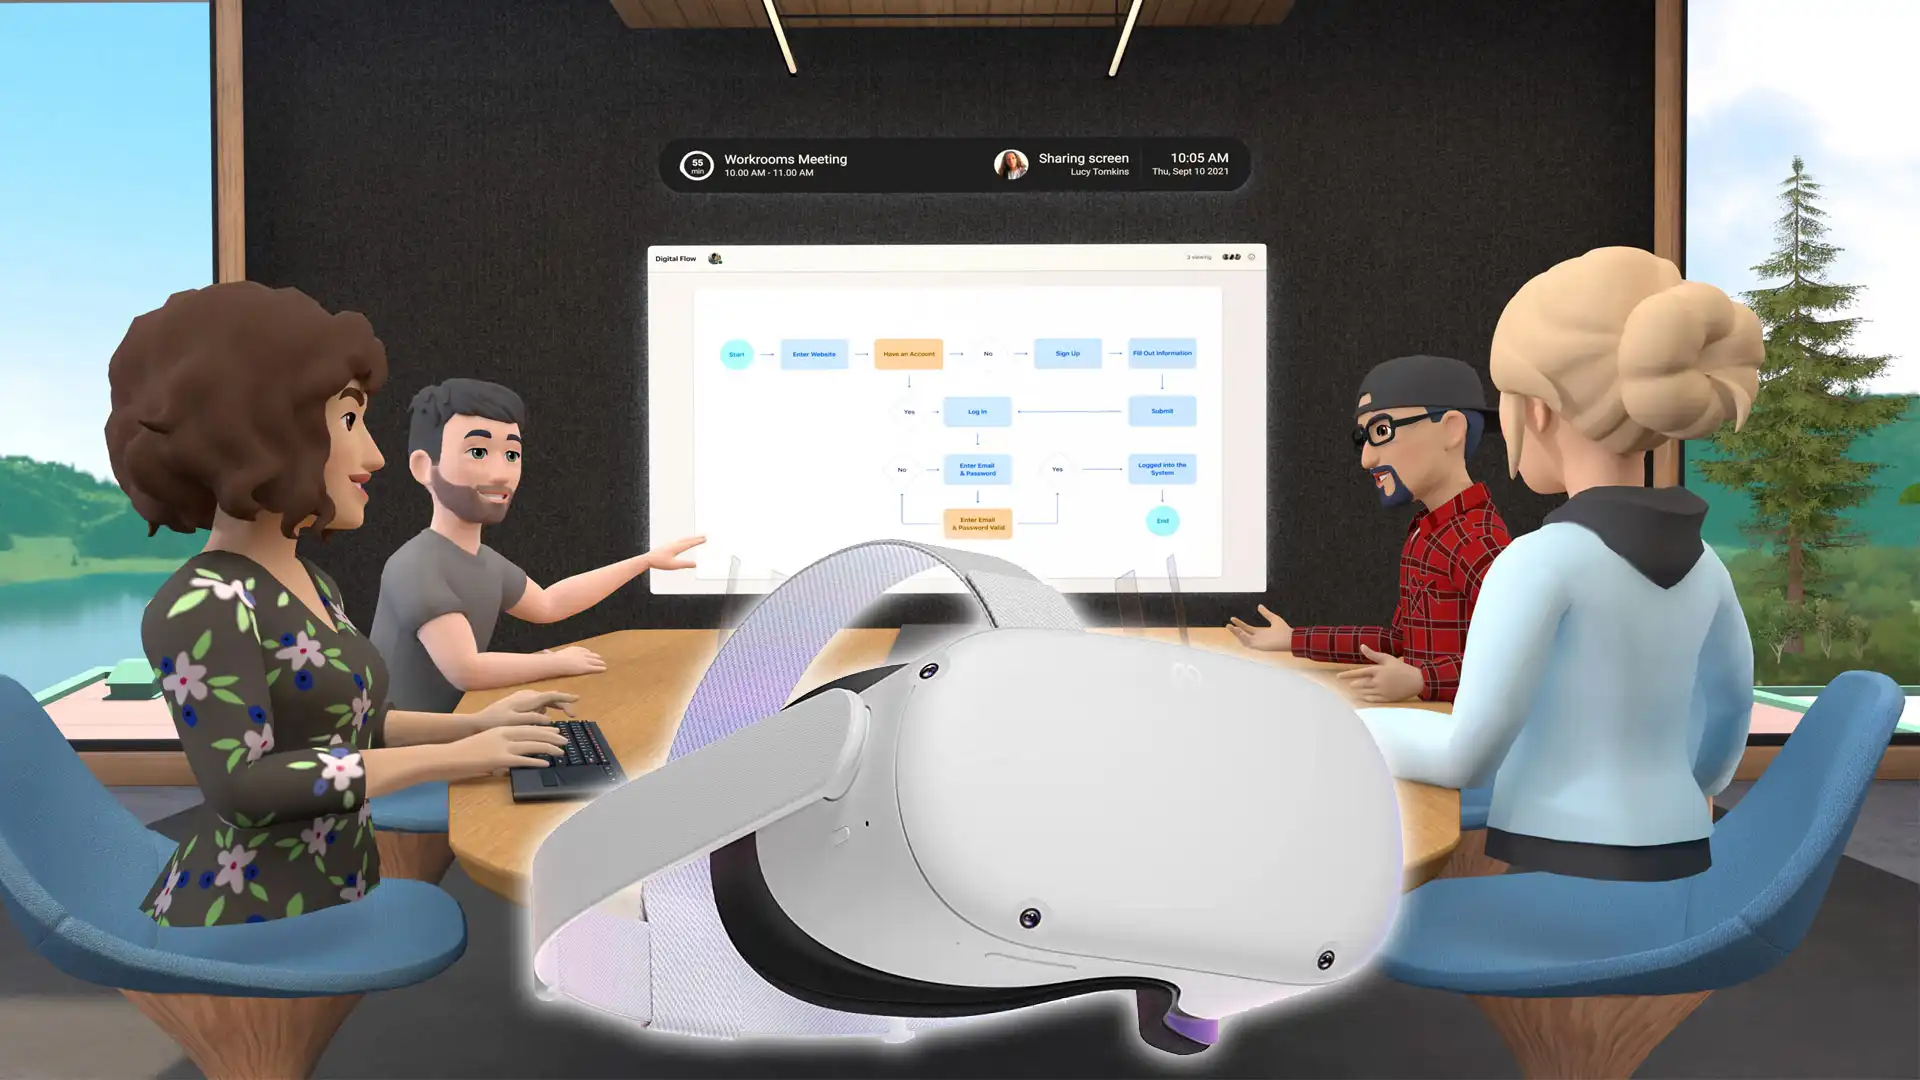 图片展示了四个卡通风格的人物围坐在一起，正通过大屏幕进行视频会议，前景放置着一副虚拟现实头盔。